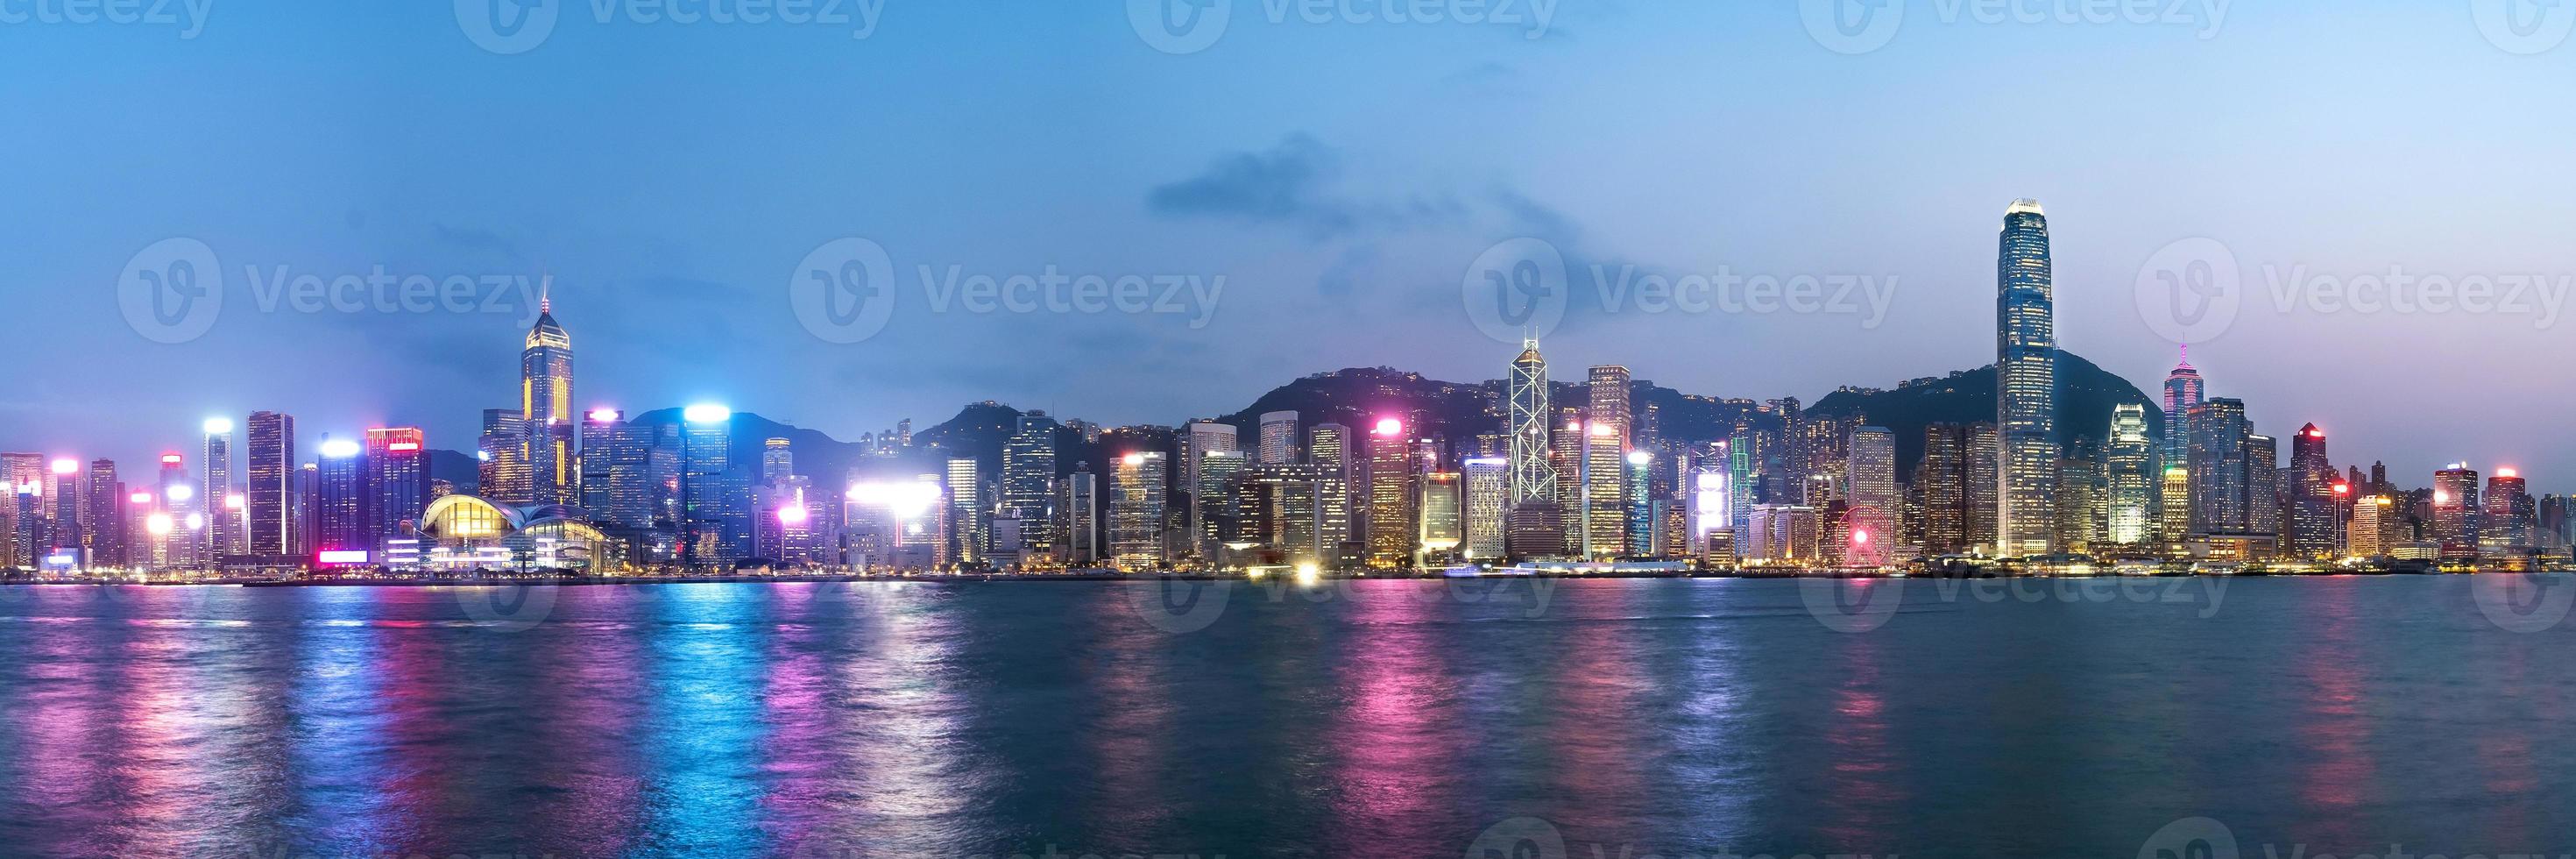 Panoramablick auf die Skyline von Hongkong am Abend von Kowloon, Hongkong, China aus gesehen. foto